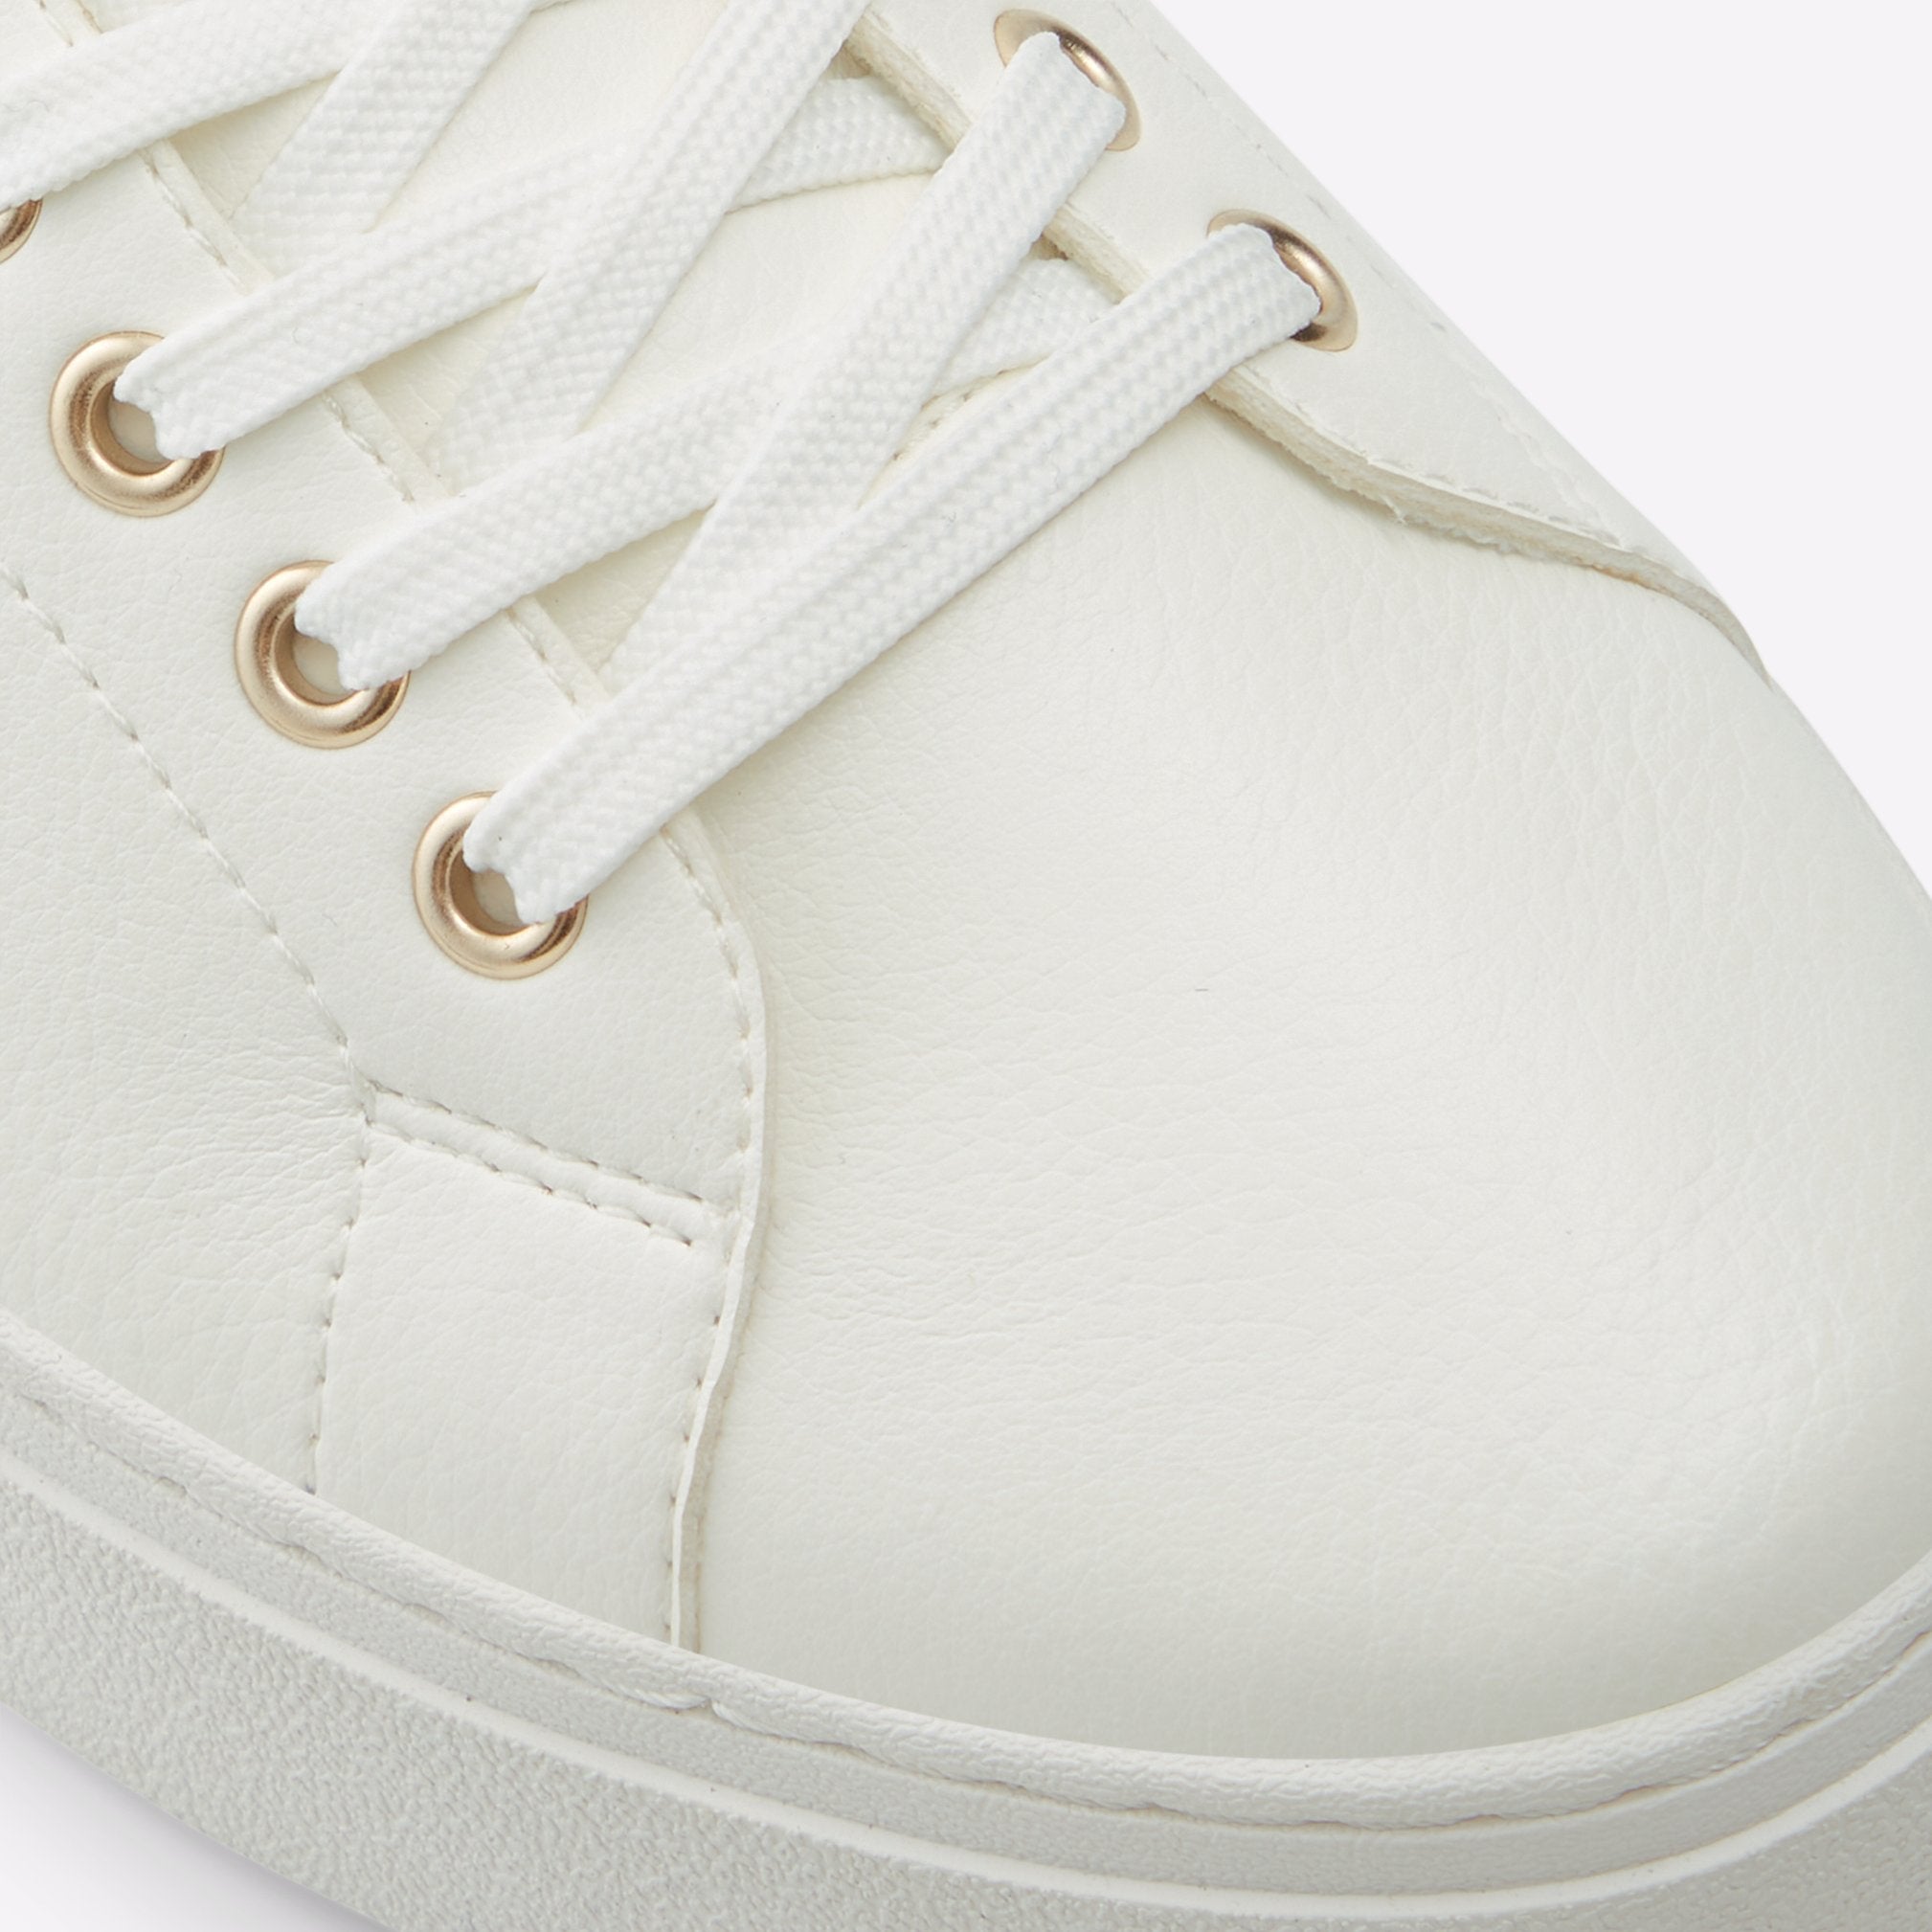 Agassi Men Shoes - White - ALDO KSA